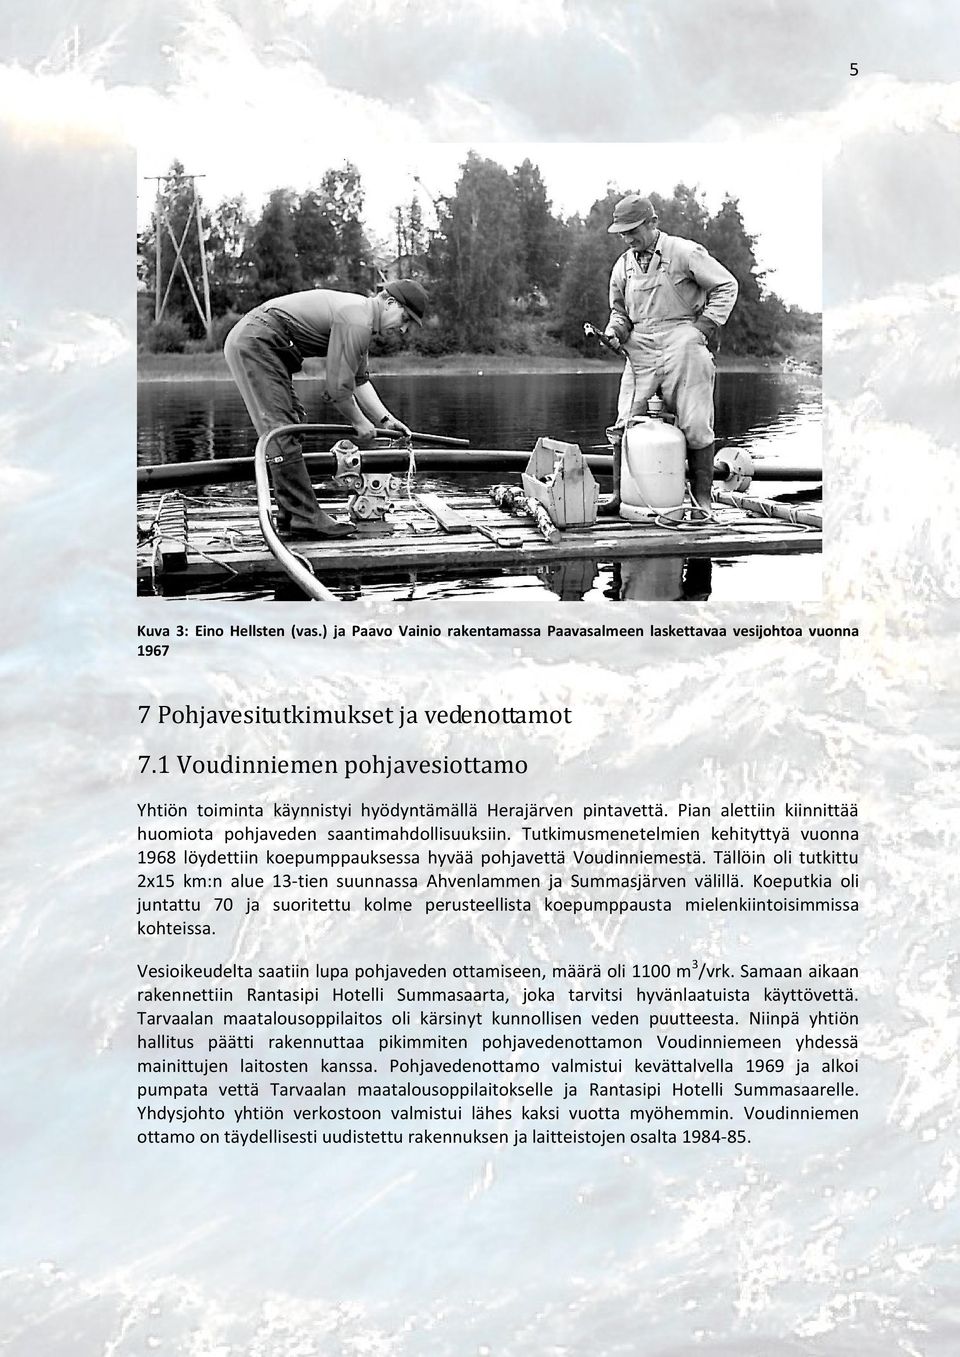 Tutkimusmenetelmien kehityttyä vuonna 1968 löydettiin koepumppauksessa hyvää pohjavettä Voudinniemestä. Tällöin oli tutkittu 2x15 km:n alue 13-tien suunnassa Ahvenlammen ja Summasjärven välillä.